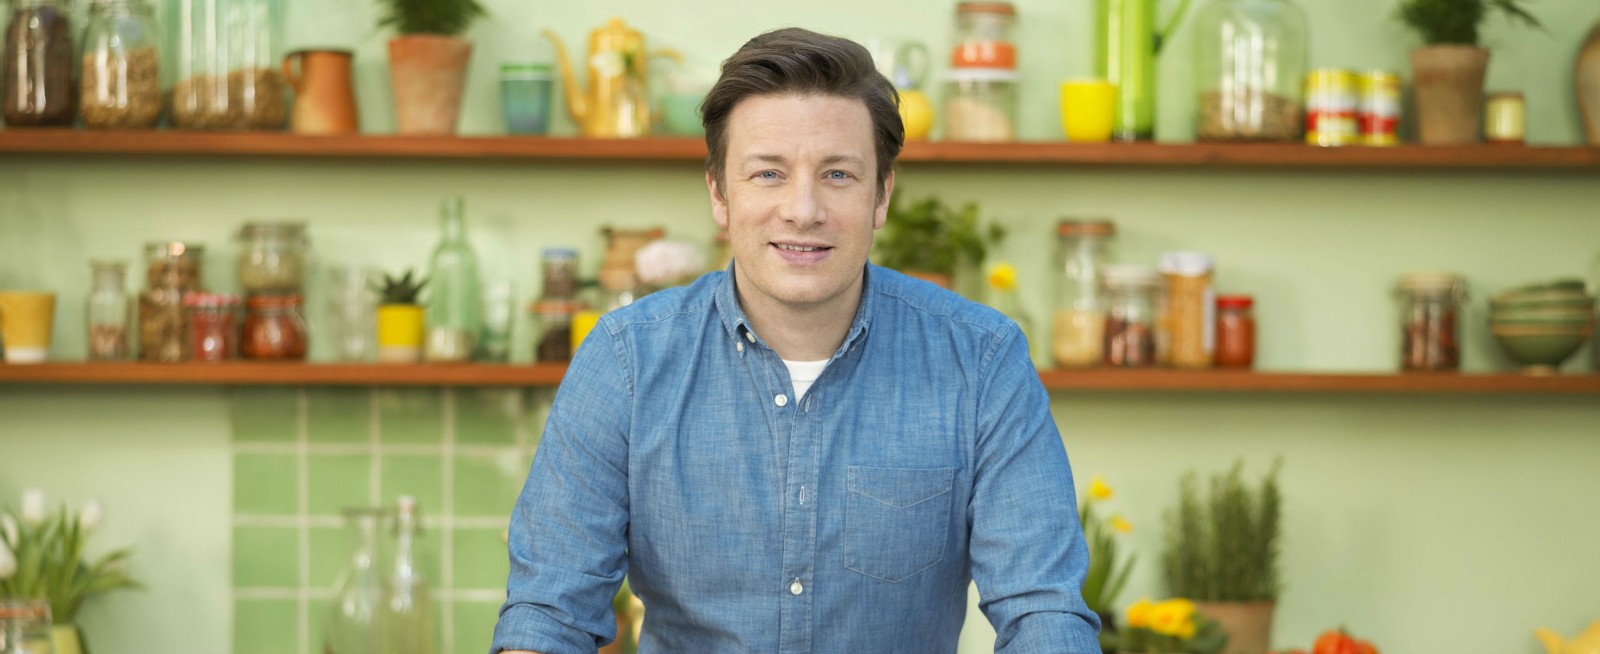 „Super food pentru toata familia” Noua carte despre super-alimente a lui Jamie Oliver